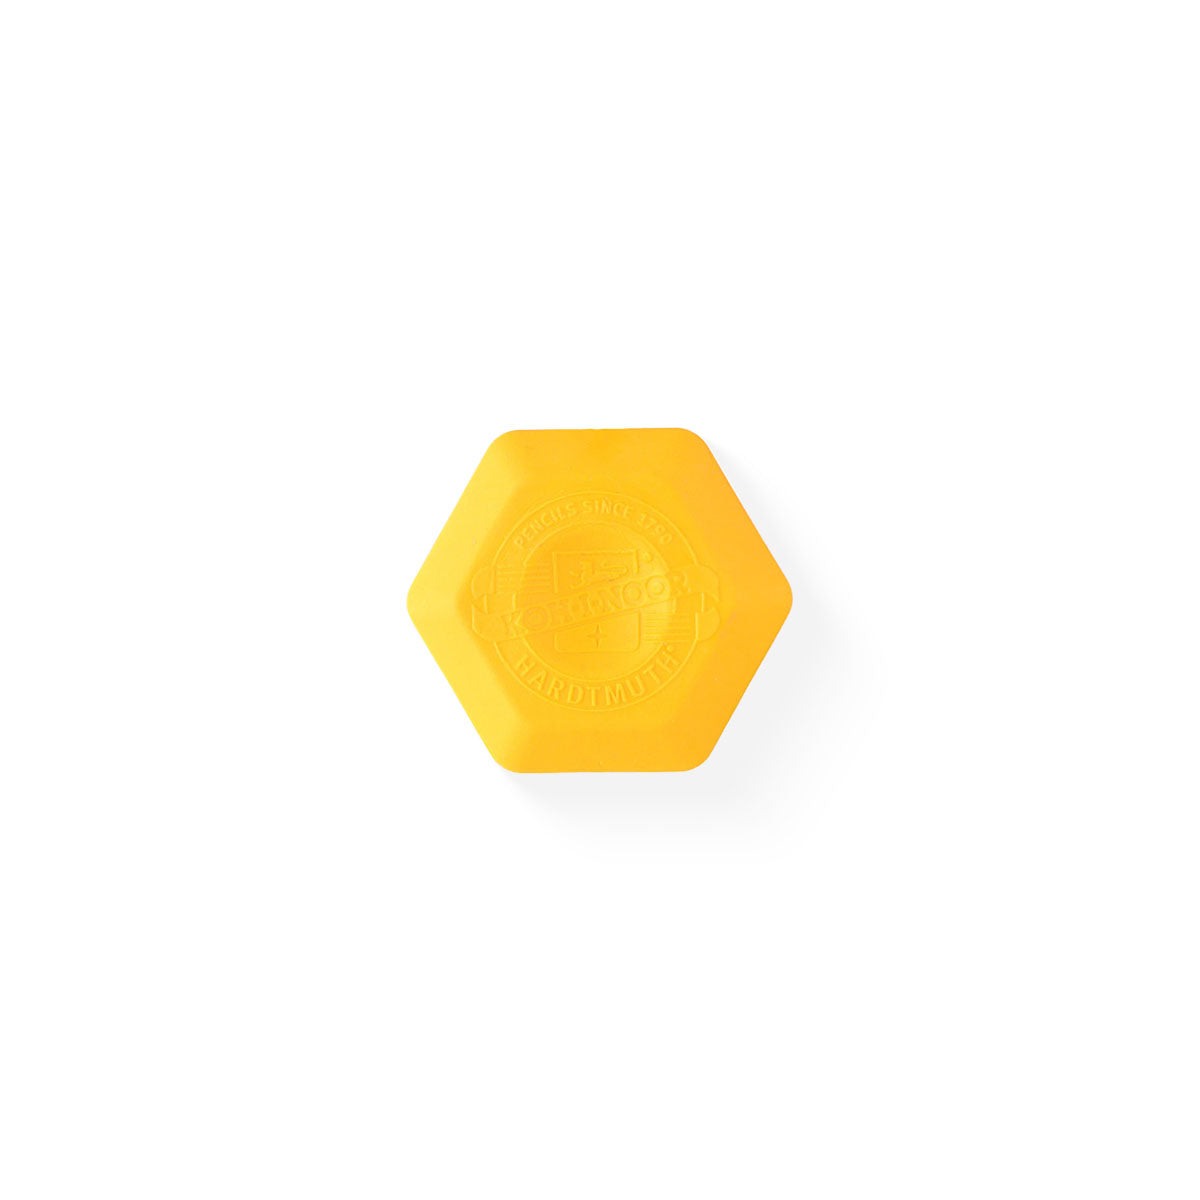 Koh-I-Noor Hexagon Thermoplastic Eraser yellow